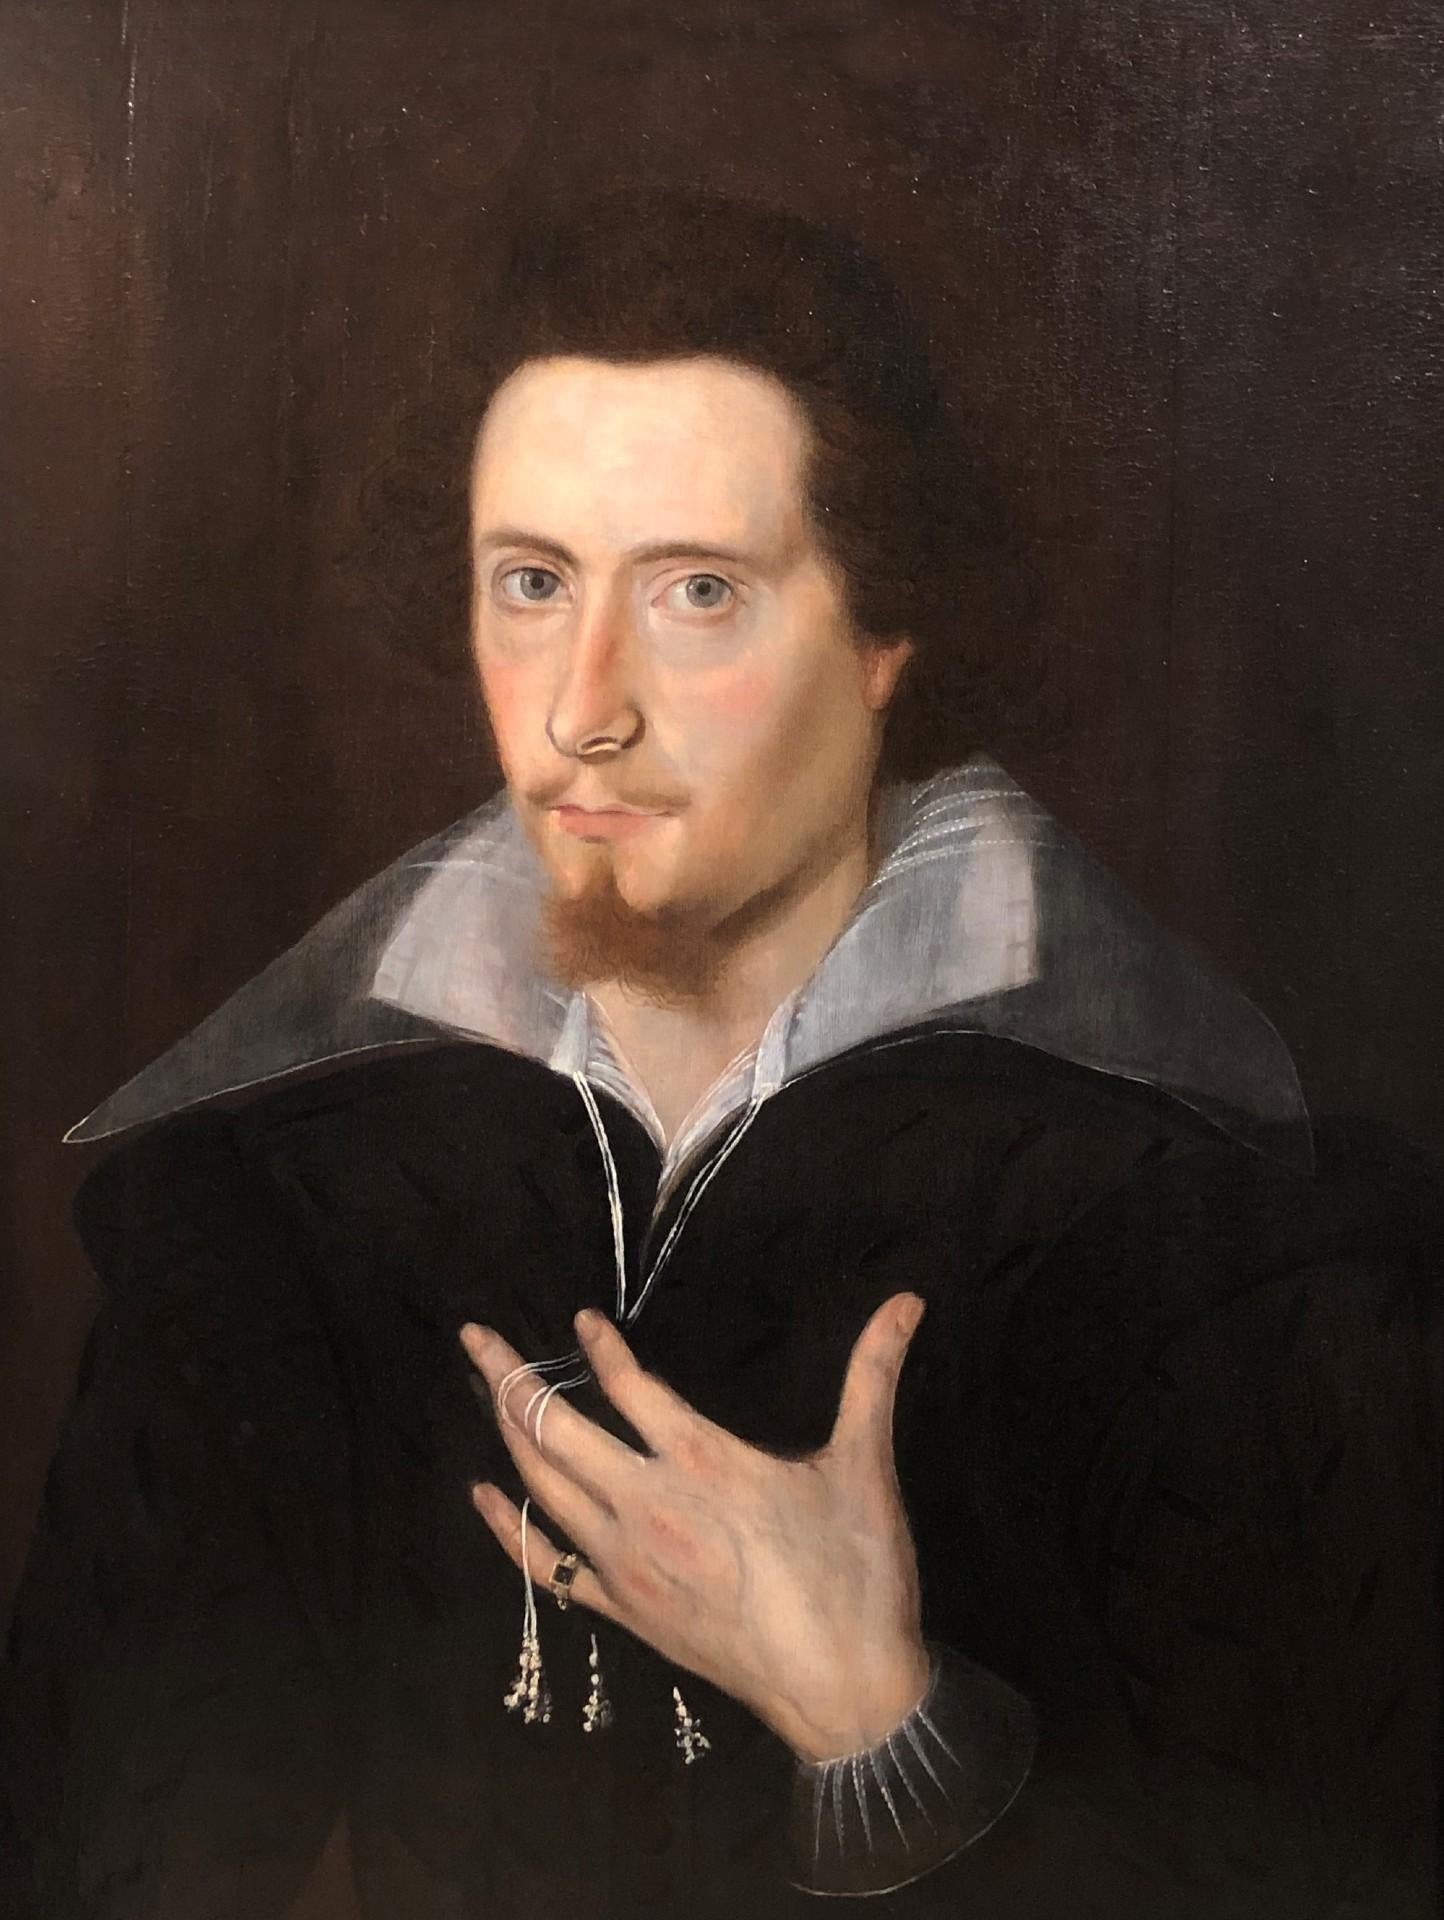 Mögliches Porträt von William Shakespeare